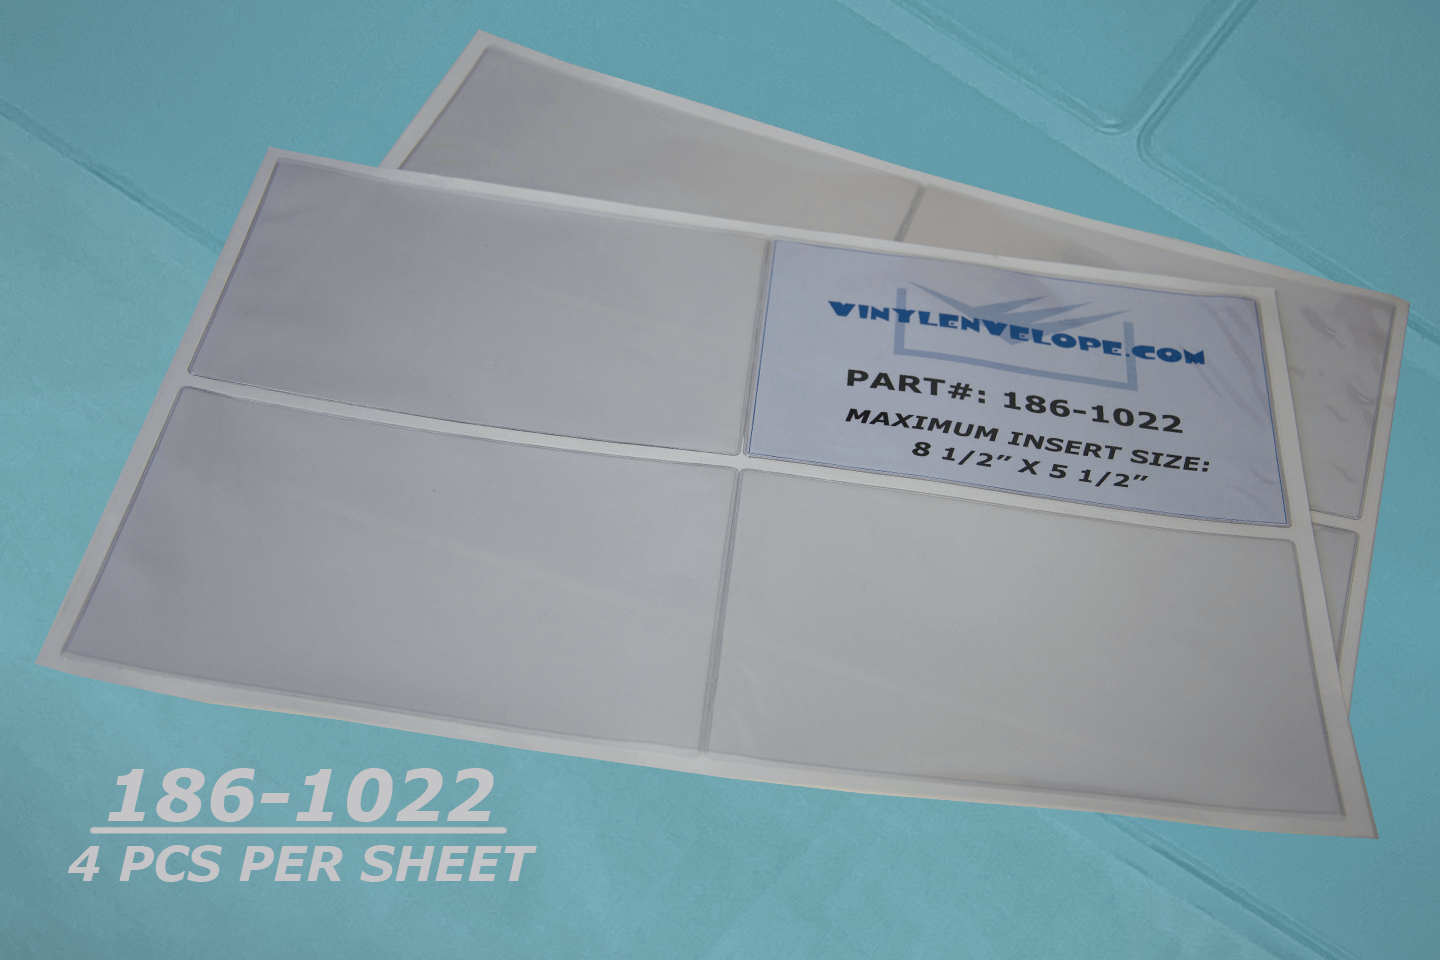 8 3/4" x 5 3/4" Adhesive Vinyl Envelope